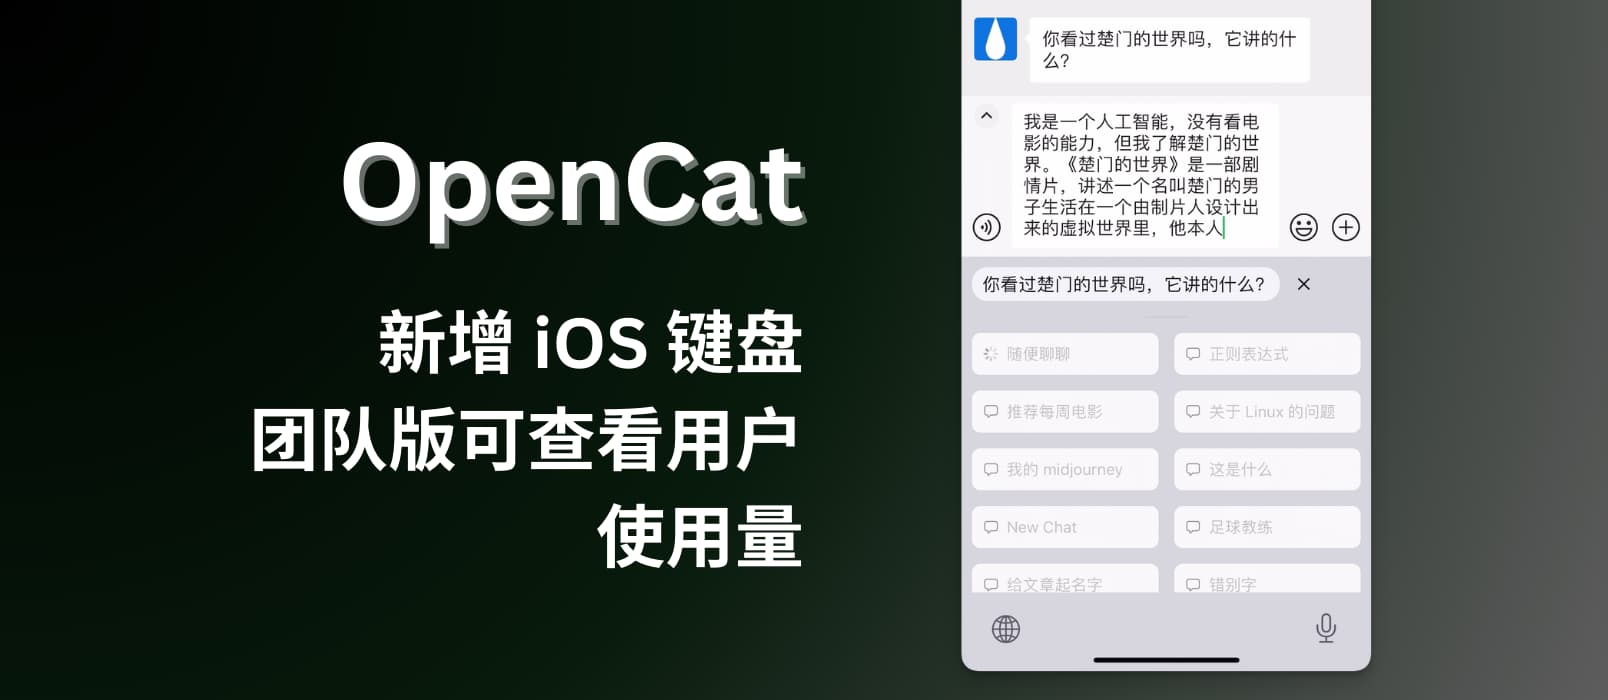 OpenCat 新增 iOS 键盘，超便捷向 ChatGPT 提问，并自动输入回答。另团队版可查看用户使用量